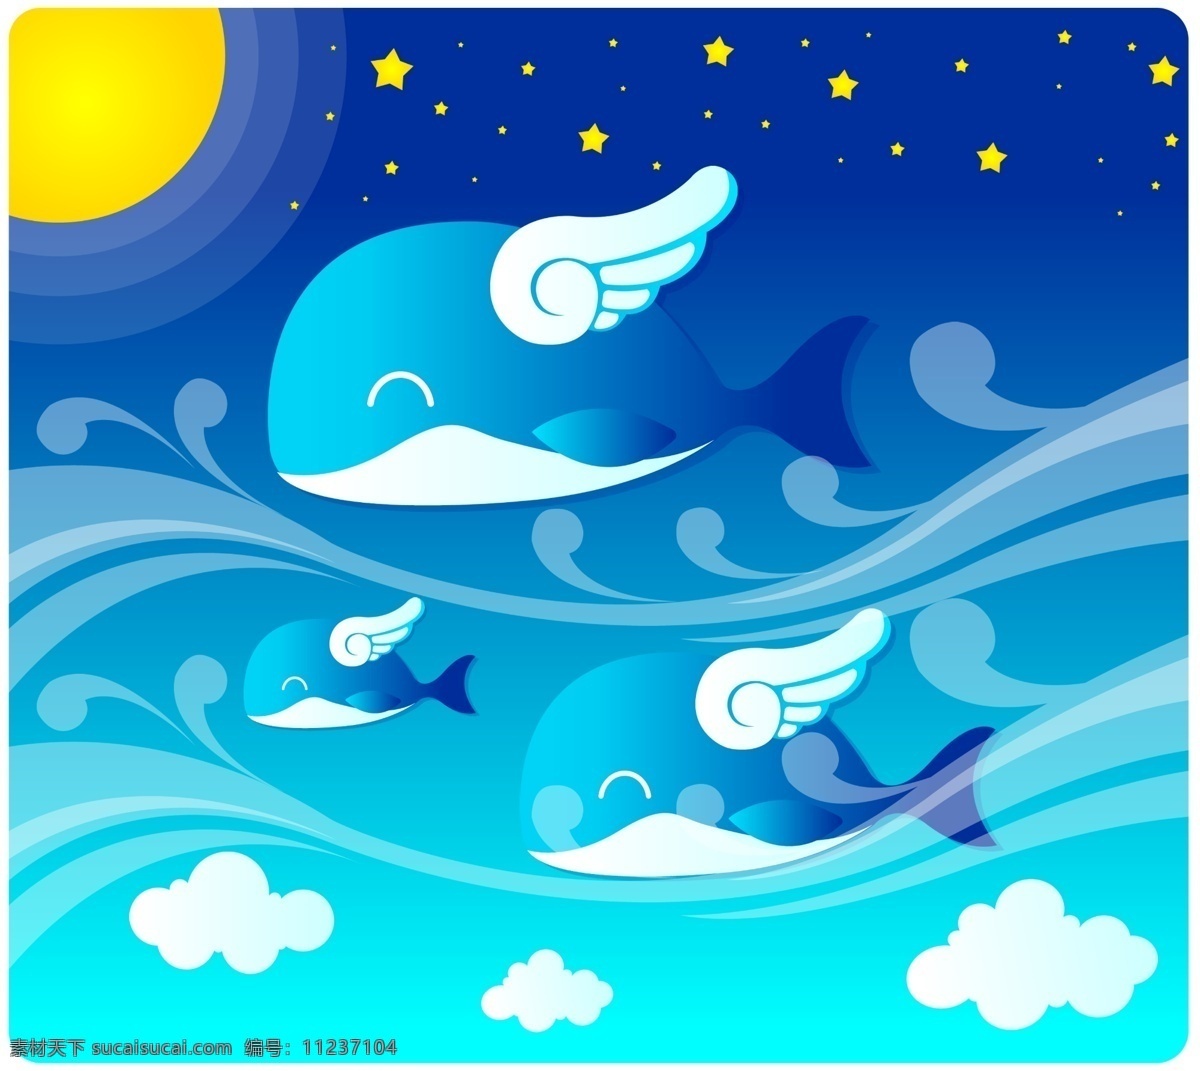 分层 翅膀 鲸鱼 飘带 微笑 星空 星星 夜晚 源文件 夏天 风景 模板下载 夏天风景素材 月亮 蓝鲸 飞鲸鱼 云